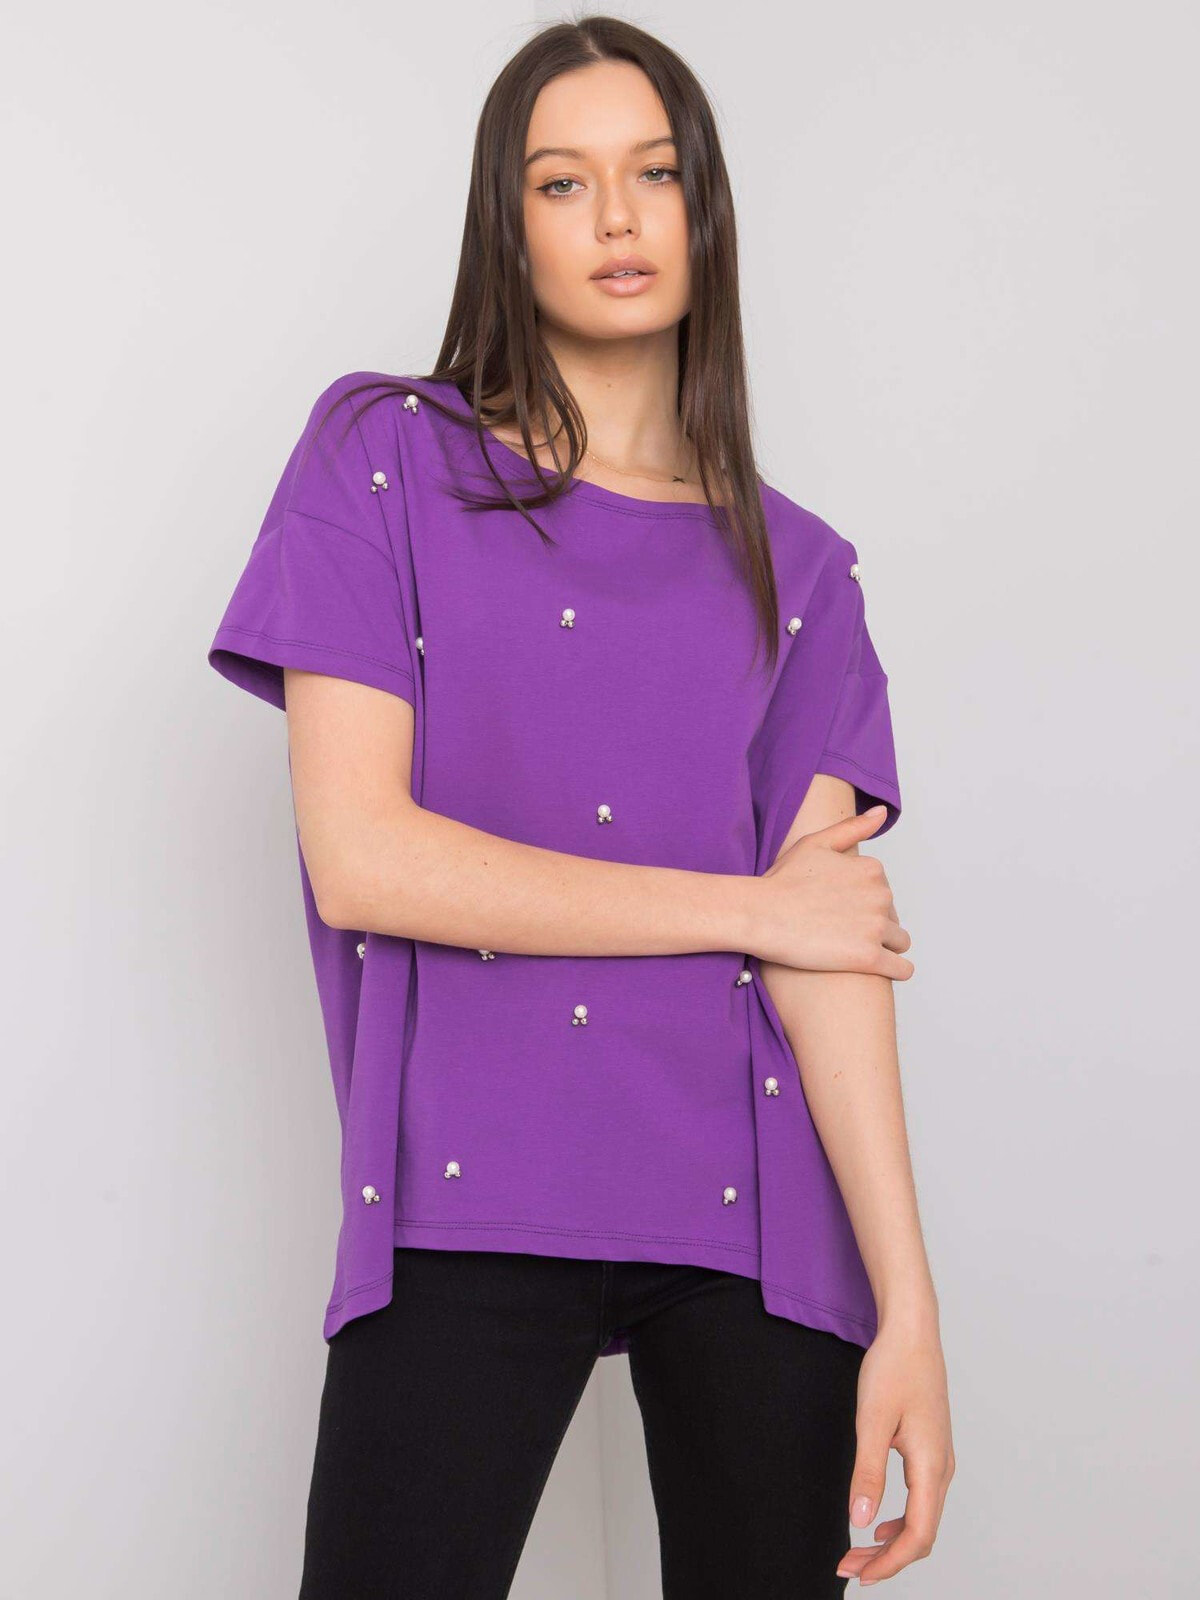 Женская блузка свободного кроя с коротким рукавом фиолетовая Factory Price